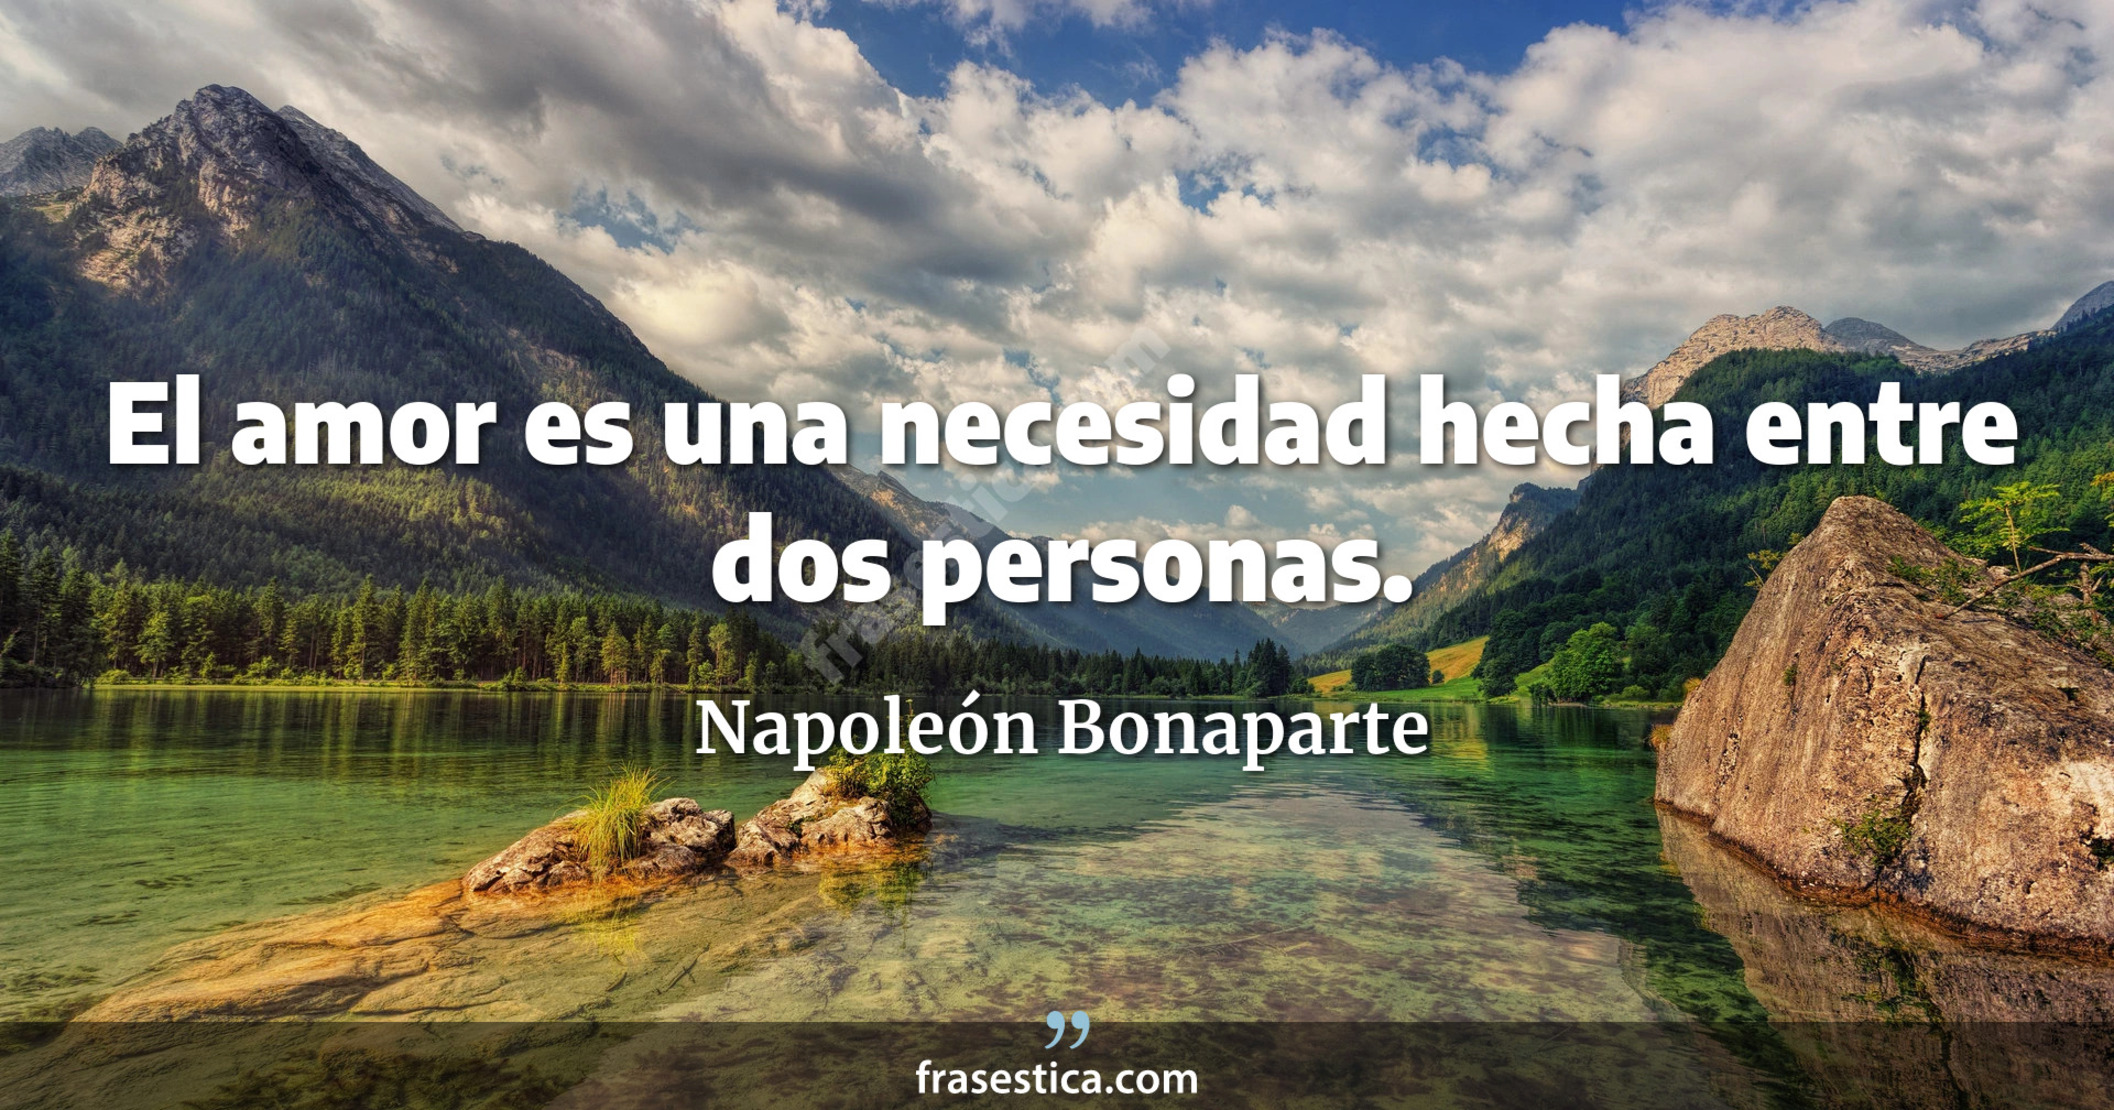 El amor es una necesidad hecha entre dos personas. - Napoleón Bonaparte